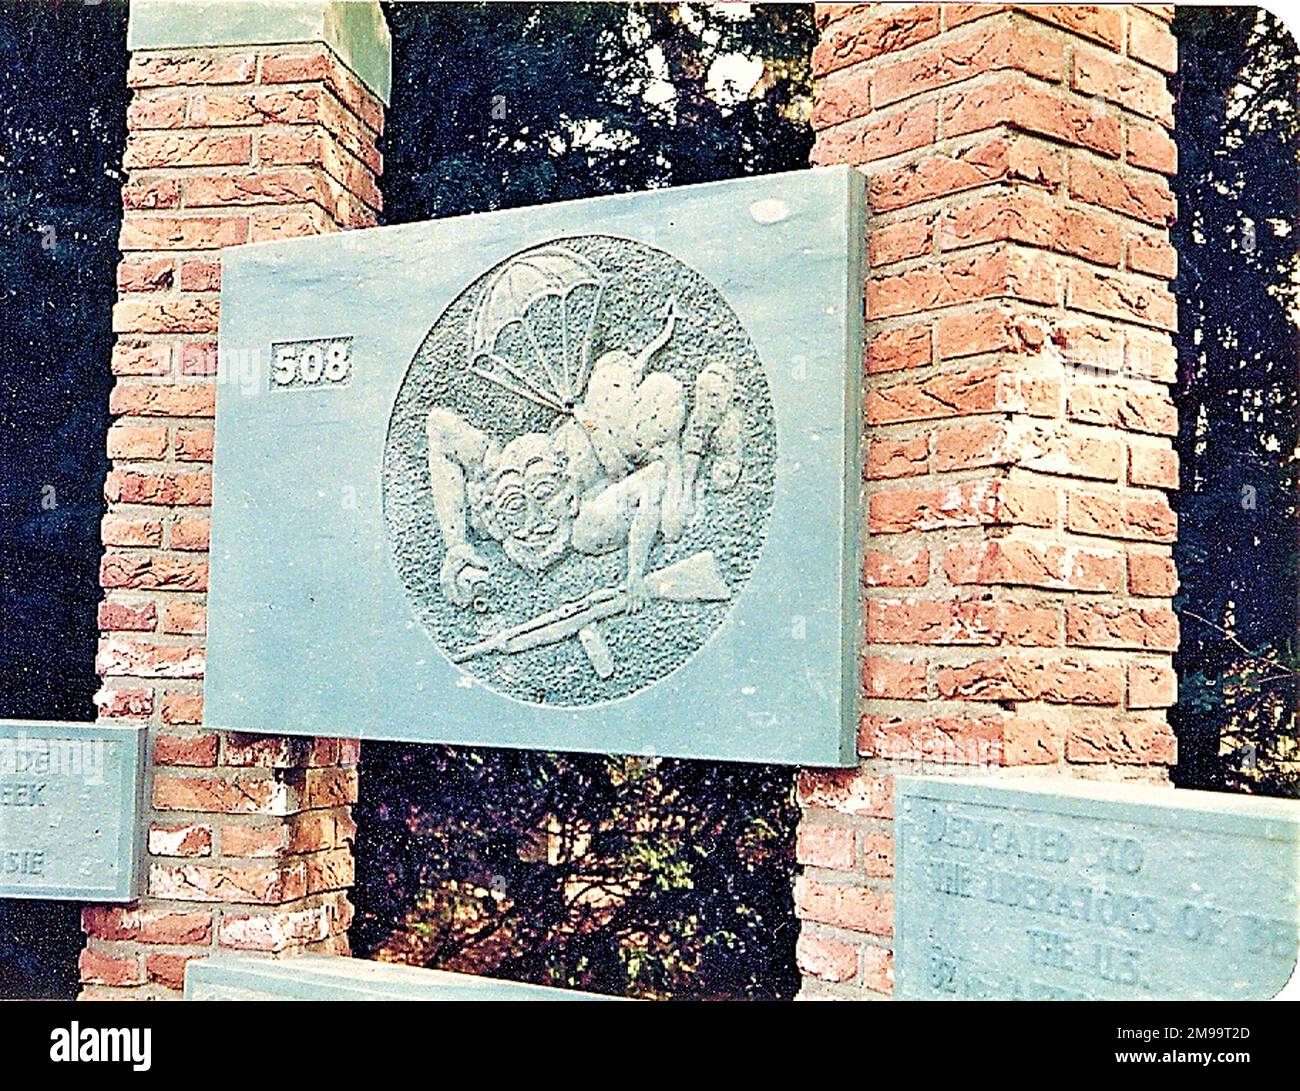 Das Denkmal wurde von H. J. Guse entworfen und am 17. September 1981 errichtet. Er erinnert an die Befreiung von Beek am 17. September 1944 durch die 508., die als "Rote Teufel" bekannt waren. Es war der erste Tag der Operation Market Garden. In C-Kompanie des Regiments war erster Sergeant Leonard A. Funk, der nach Pennsylvania zurückkehrte, als der am meisten dekorierte amerikanische Fallschirmjäger des Krieges. Das Bas-Relief eines teuflischen Teufels stammt aus einem Eintrag in das Tagebuch eines deutschen Offiziers, der in Anzio gegen amerikanische Fallschirmjäger kämpfte (tatsächlich waren es die 504., nicht die 508.). Da stand: "Amer Stockfoto